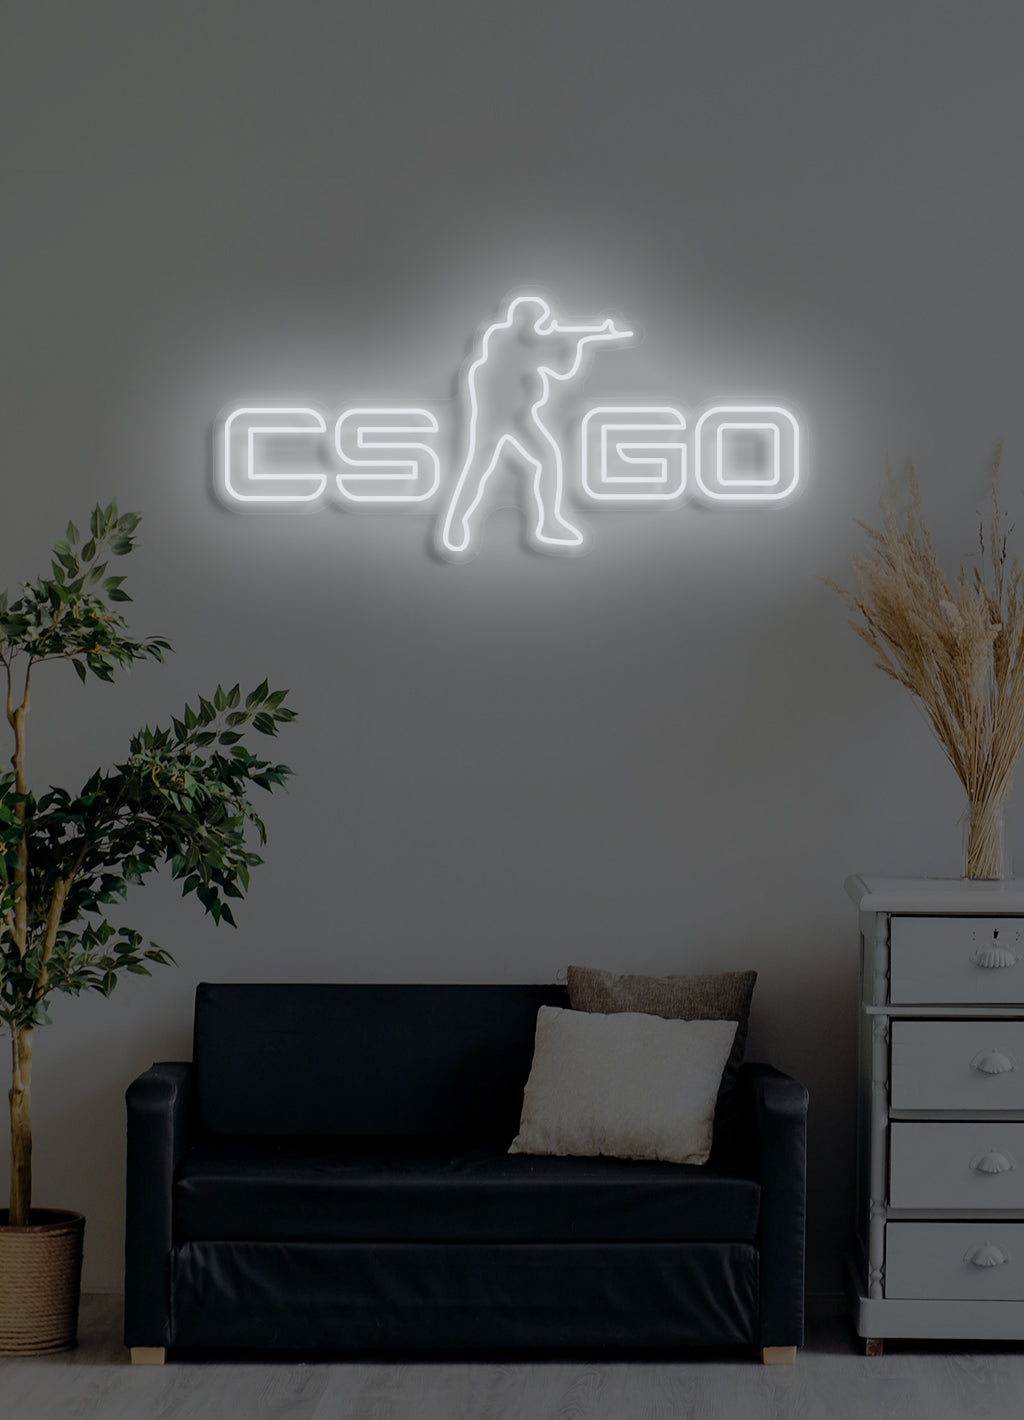 Counter Strike - LED Neon skilt